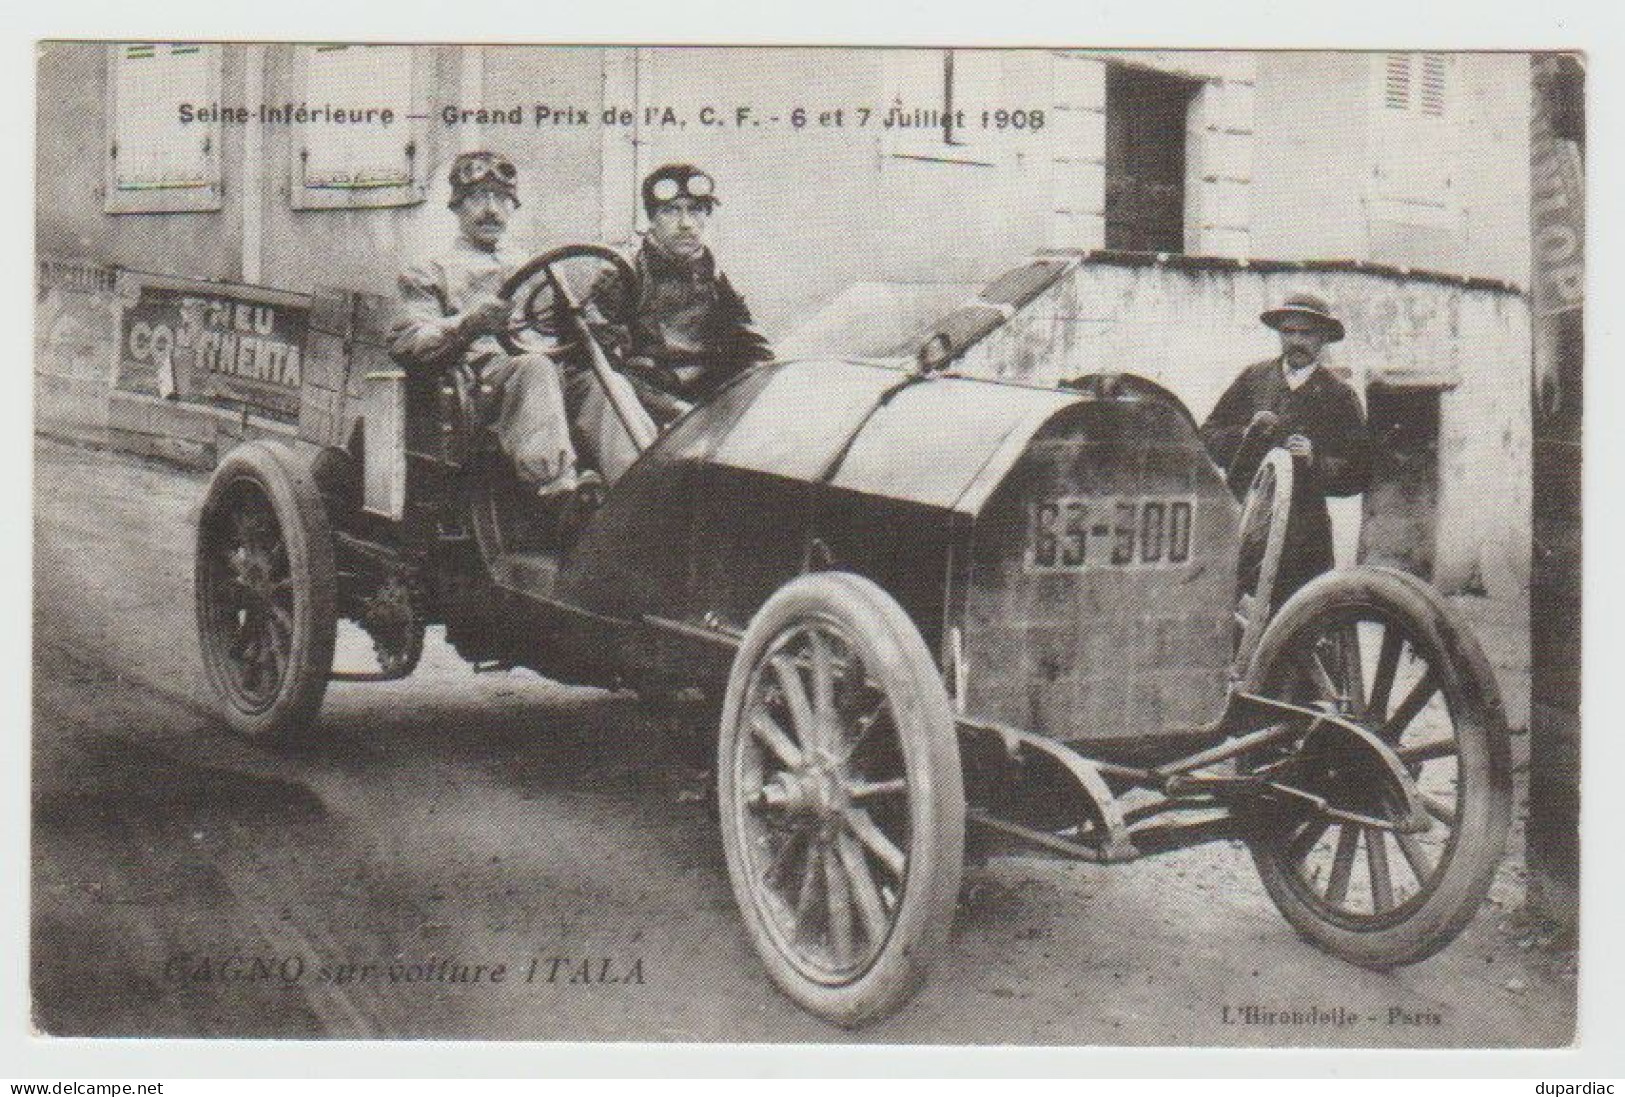 Sport Automobile / Seine Inférieure -- Grand Prix De L'A.C.F. - 6 Et 7 Juillet 1908. GAGNO Sur Voiture ITALA. - Rally Racing